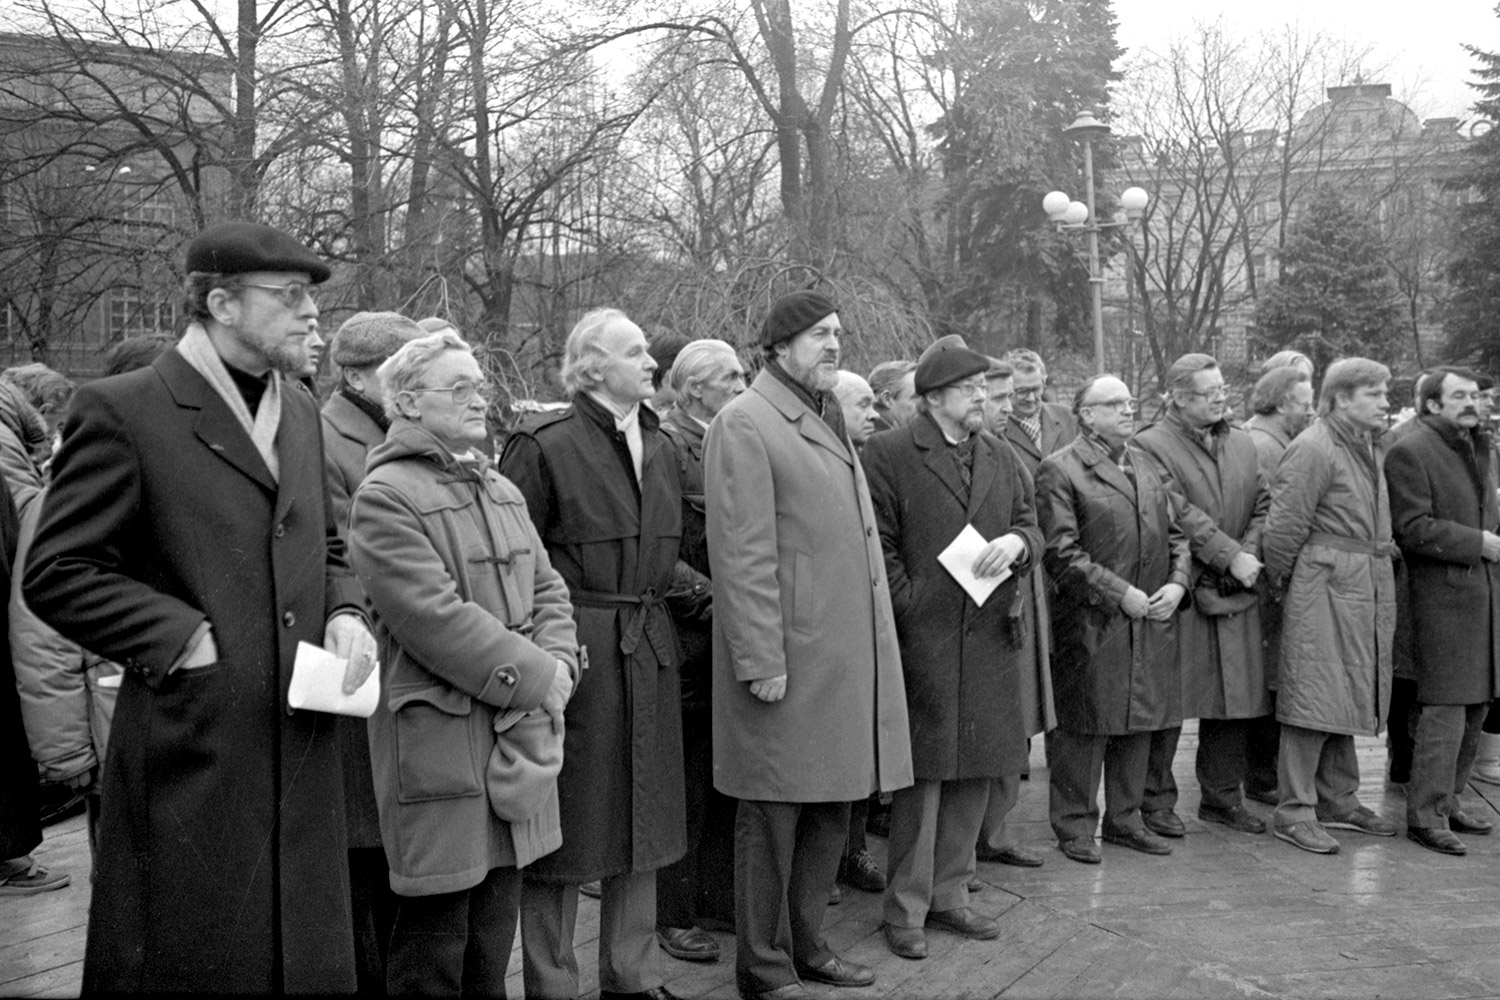 December 1988 – Escorts of USSR People’s Deputies to Moscow in Vilnius, Gediminas Square (now – Cathedral Square). First row, from left: Arūnas Žebriūnas, Algimantas Čekuolis, Algimantas Nasvytis, Antanas Buračas, Vytautas Landsbergis, Vytautas Bubnys, Vitas Tomkus, Romualdas Ozolas and others. Among the members of Sąjūdis are former Deputies of the USSR Supreme Soviet: Vaclovas Mikučiauskas and Algirdas Ferensas. LVCA, photographer: J. Juknevičius.